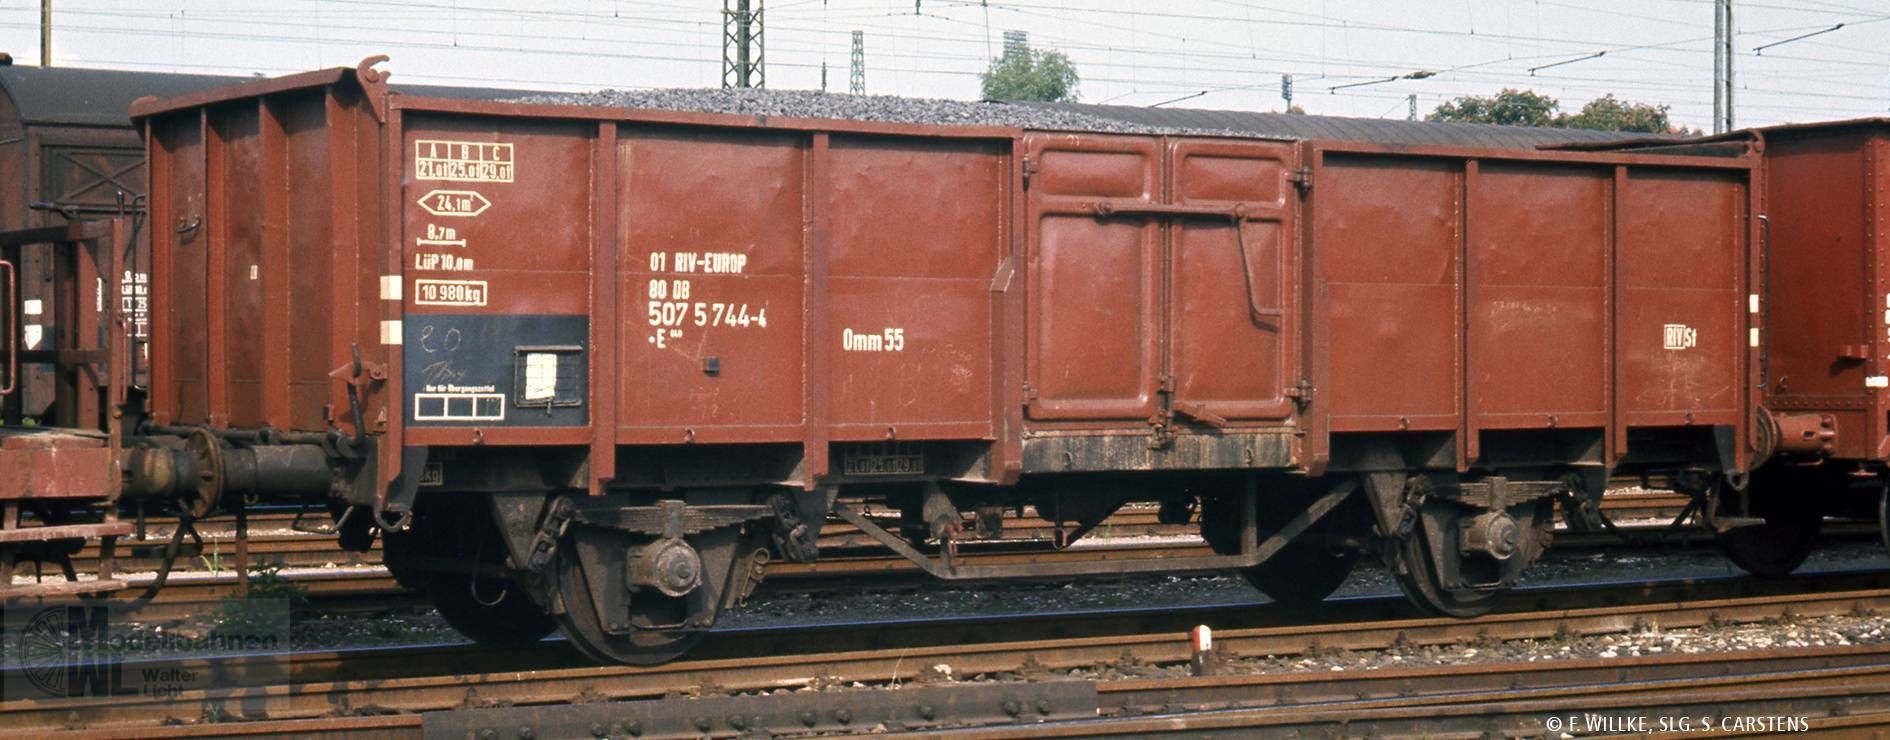 Brawa 50061 - Güterwagen offen DB Ep.IV 01 80 507 5 744-4 H0/GL